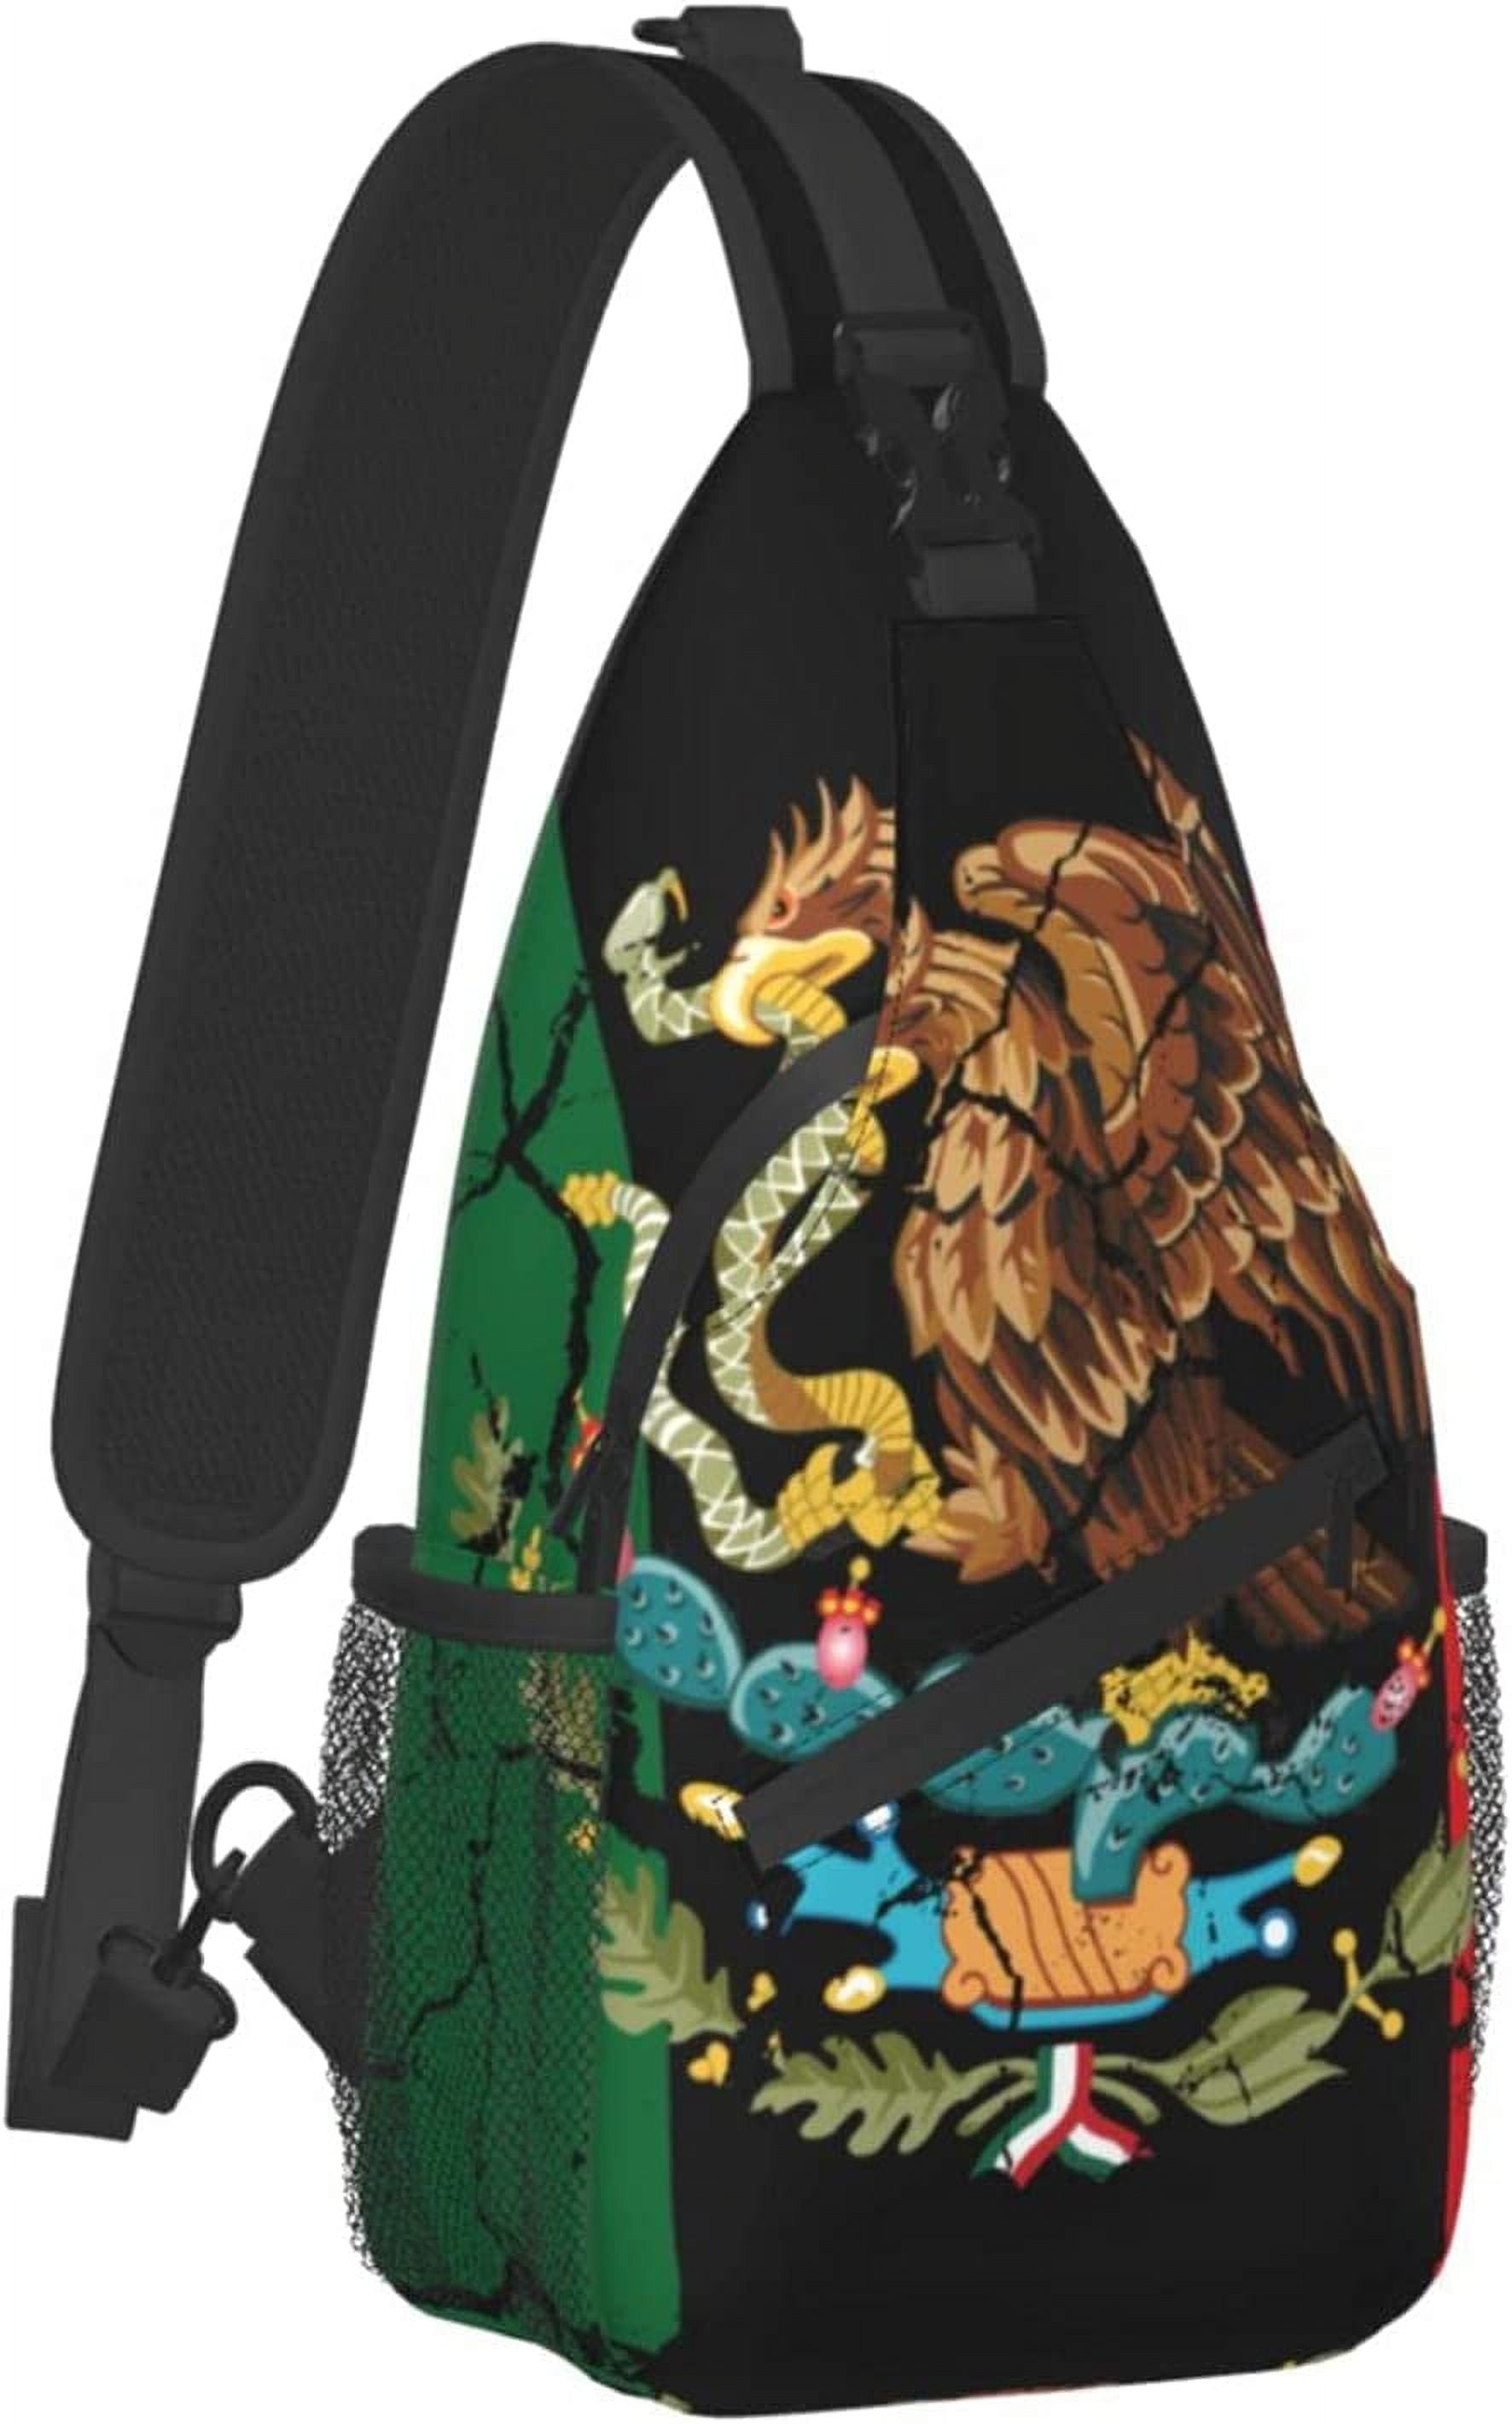 Backpack Straps Adjustable Padded Shoulder Straps For Outdoor Sport Bags  Backpack Shoulder Straps Z